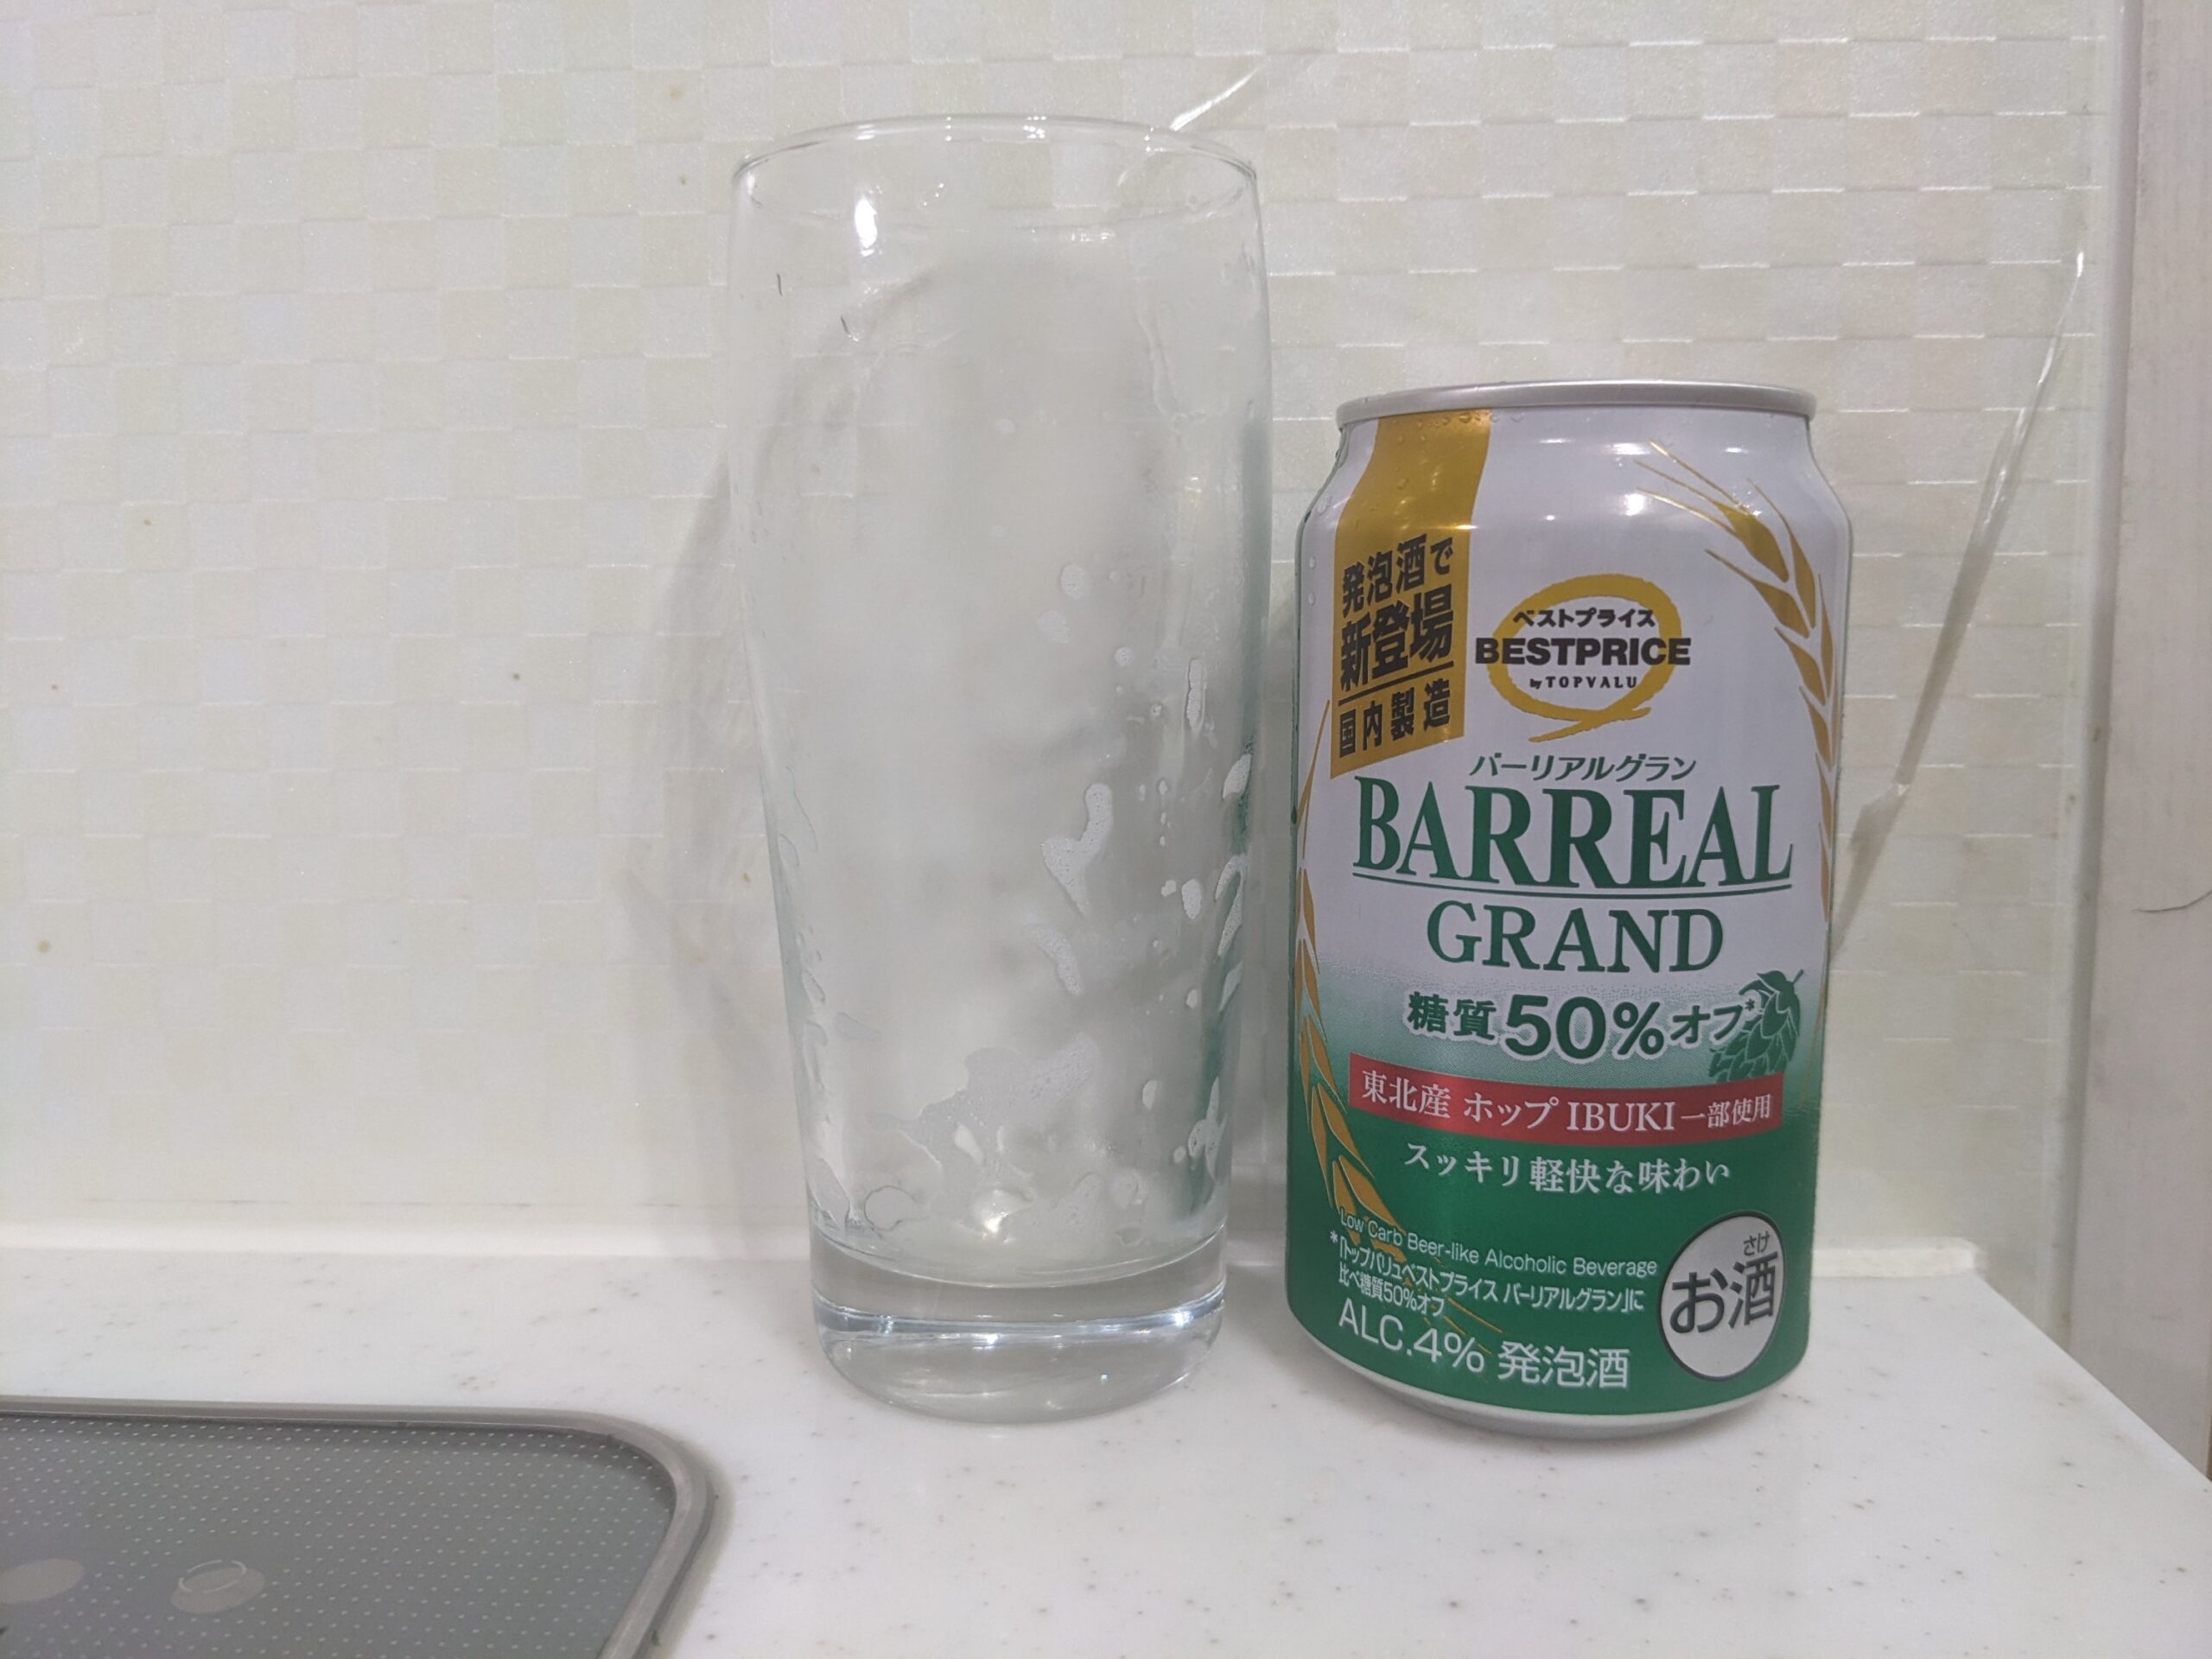 「バーリアルグラン糖質50%オフ」を飲み終えたグラスとその空き缶